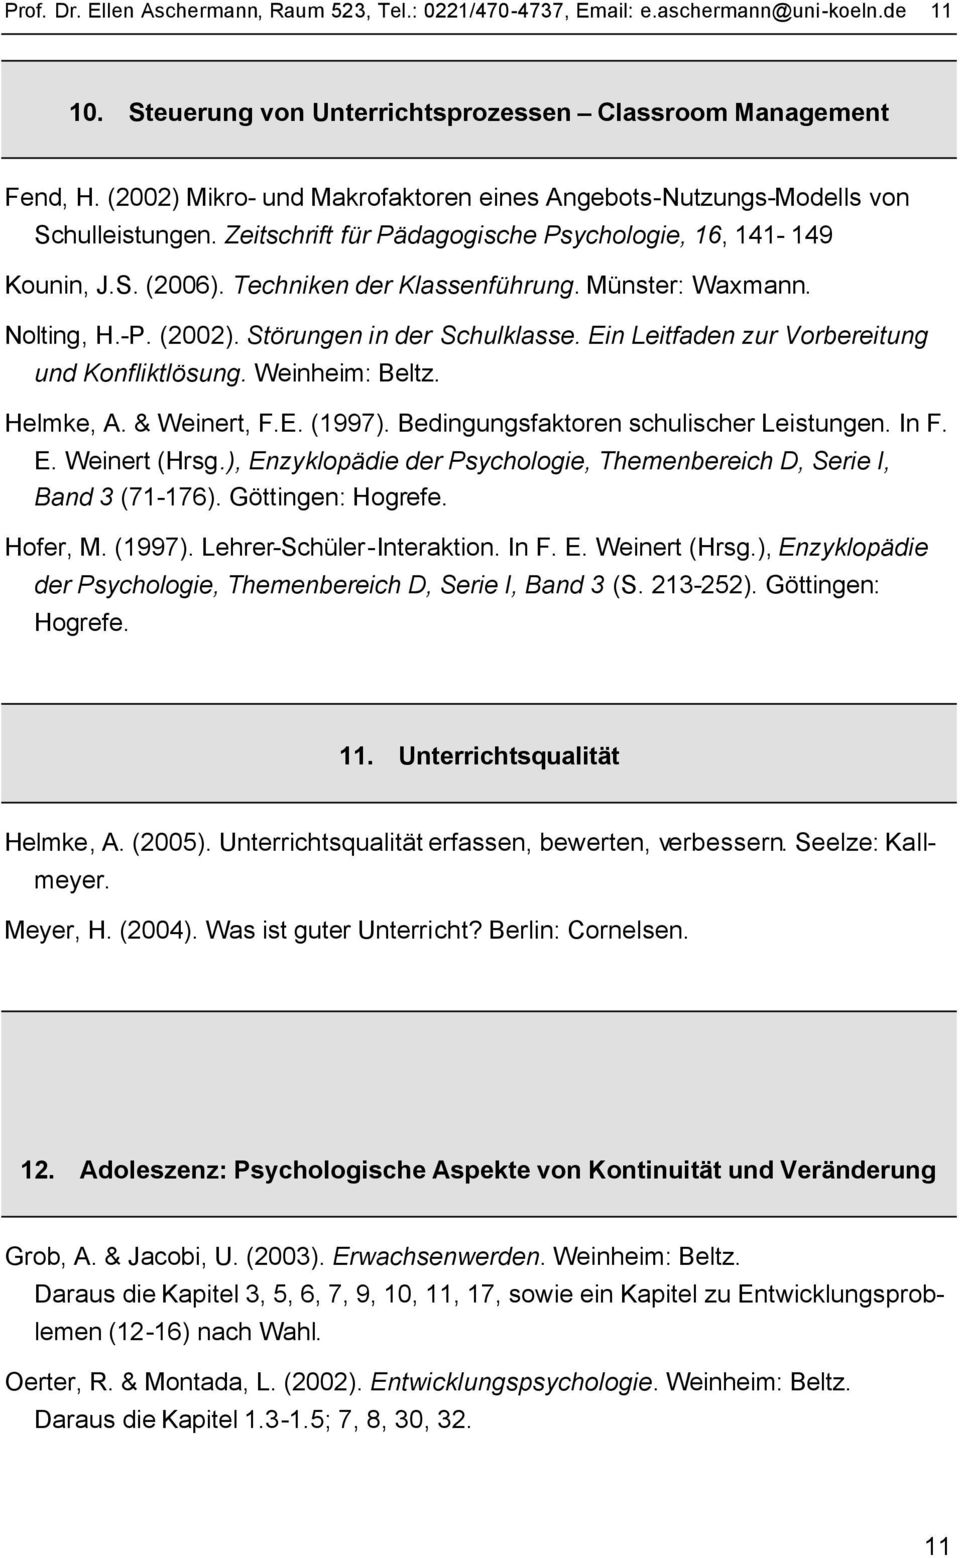 Münster: Waxmann. Nolting, H.-P. (2002). Störungen in der Schulklasse. Ein Leitfaden zur Vorbereitung und Konfliktlösung. Weinheim: Helmke, A. & Weinert, F.E. (1997).